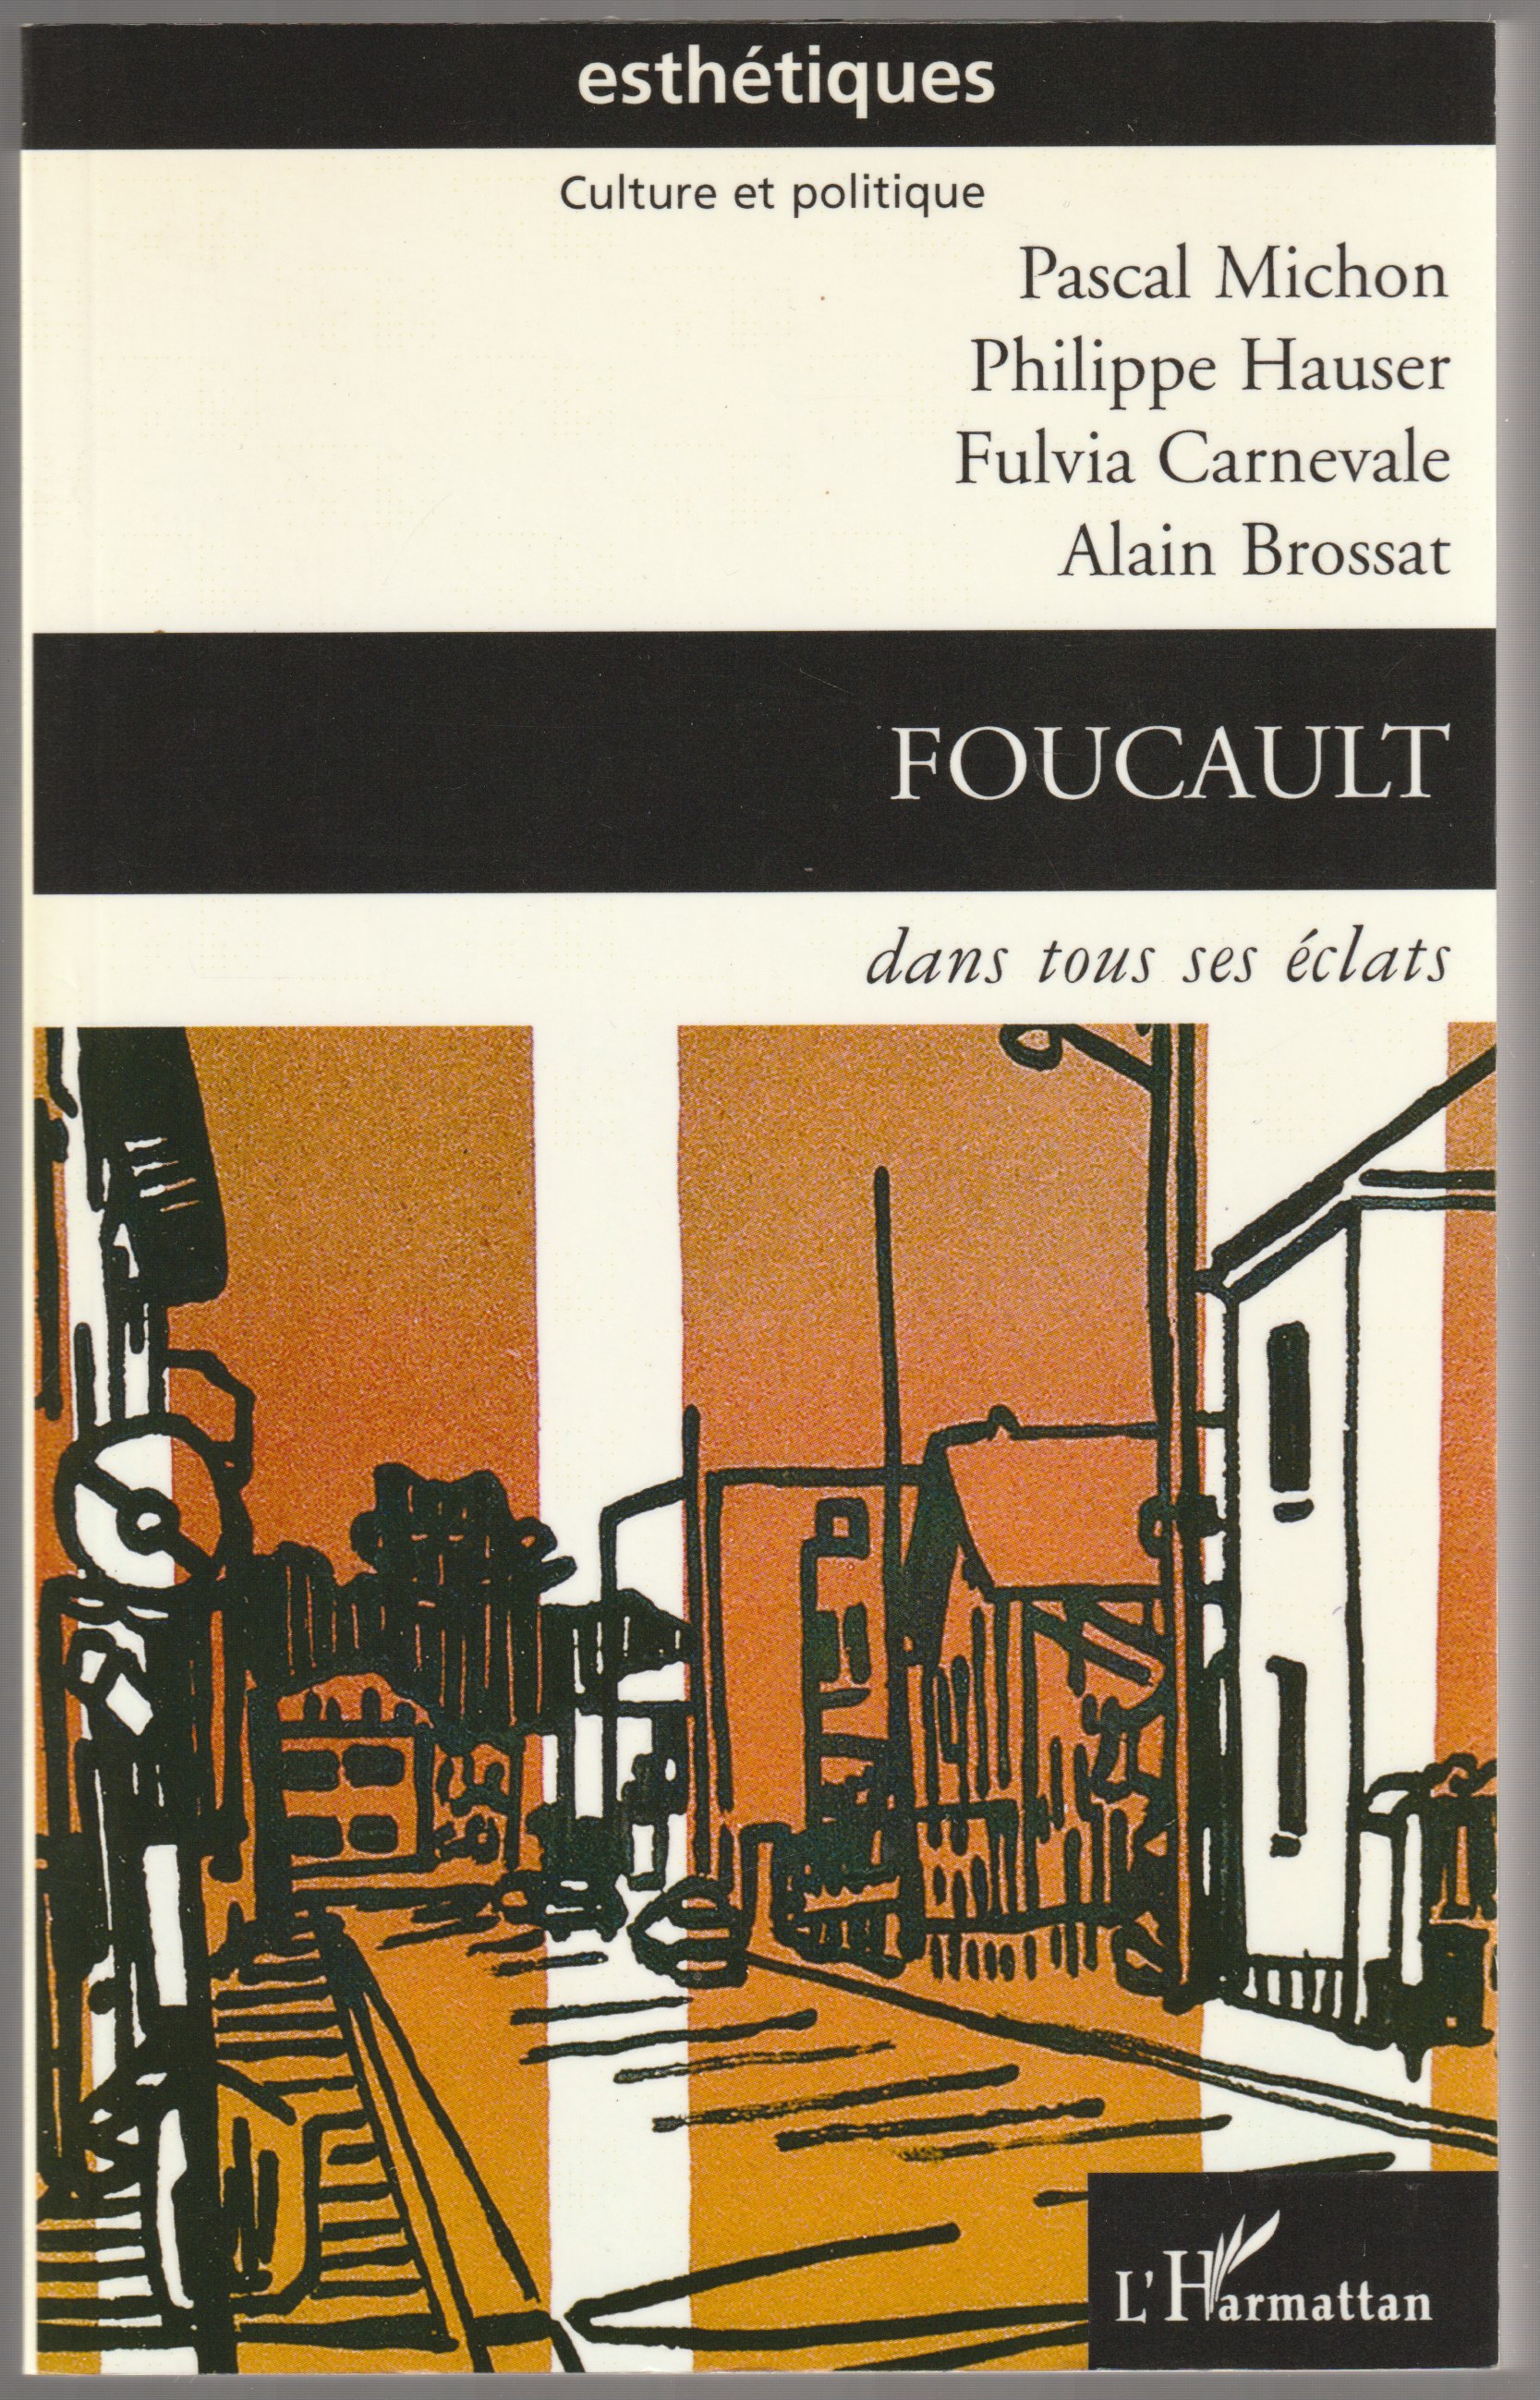 Foucault dans tous ses eclats.